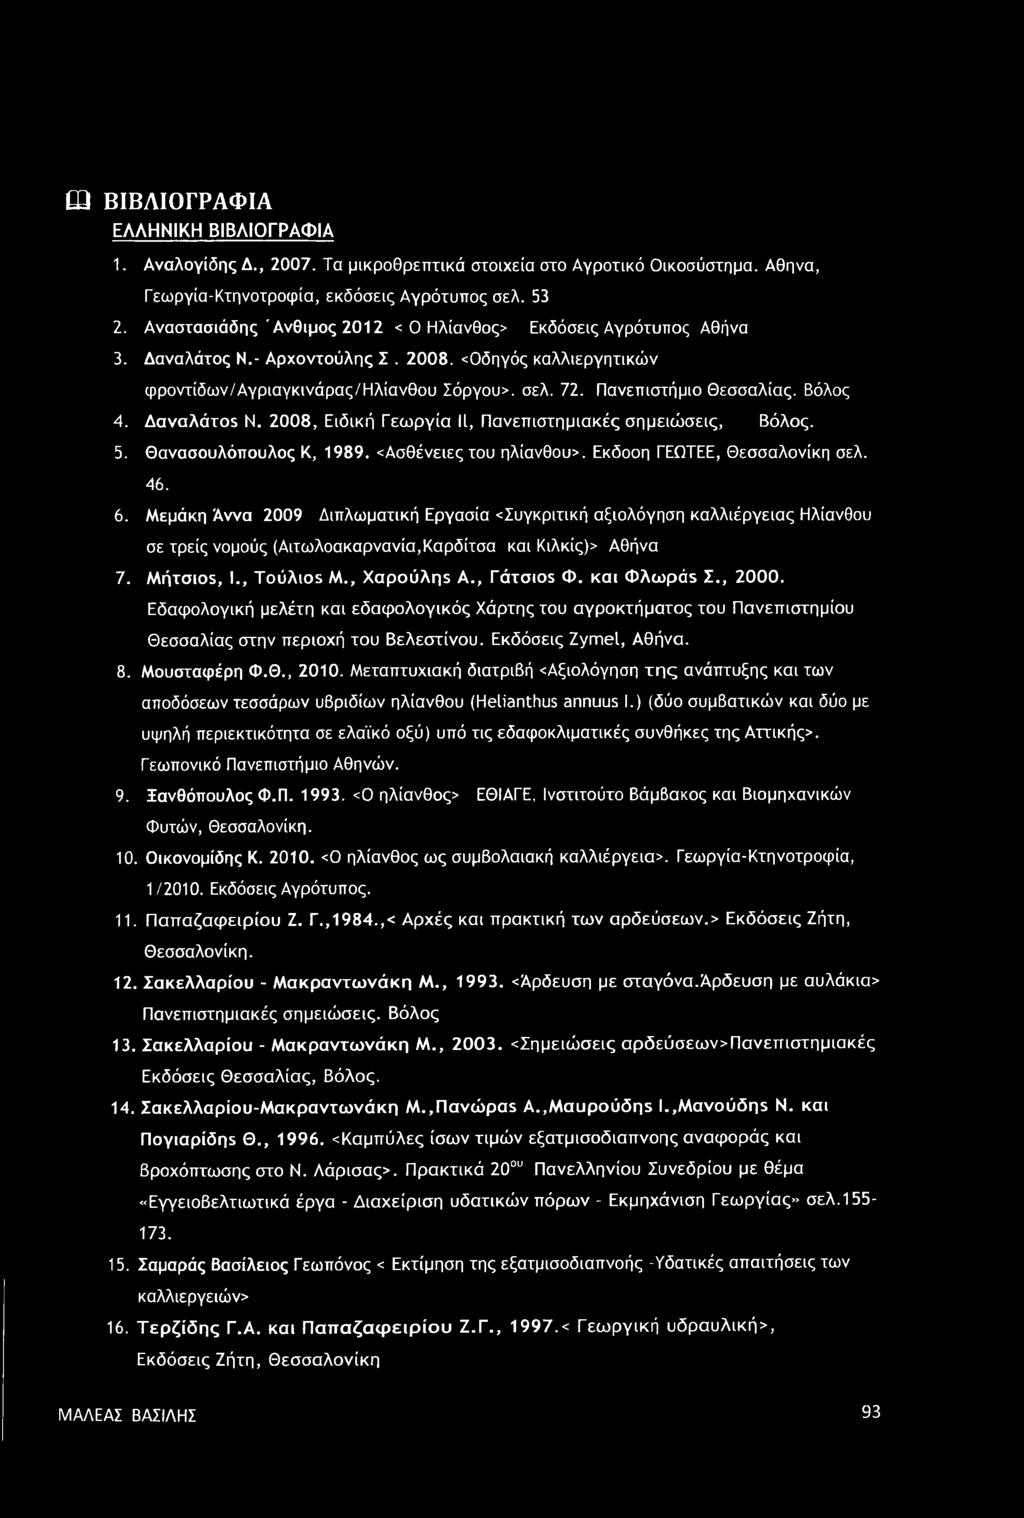 Βόλος 4. Δαναλάτοε Ν. 2008, Ειδική Γεωργία II, Πανεπιστημιακές σημειώσεις, Βόλος. 5. Θανασουλόπουλος Κ, 1989. Ασθένειες του ηλίανθου>. Εκδοοη ΓΕΩΤΕΕ, Θεσσαλονίκη σελ. 46. 6.